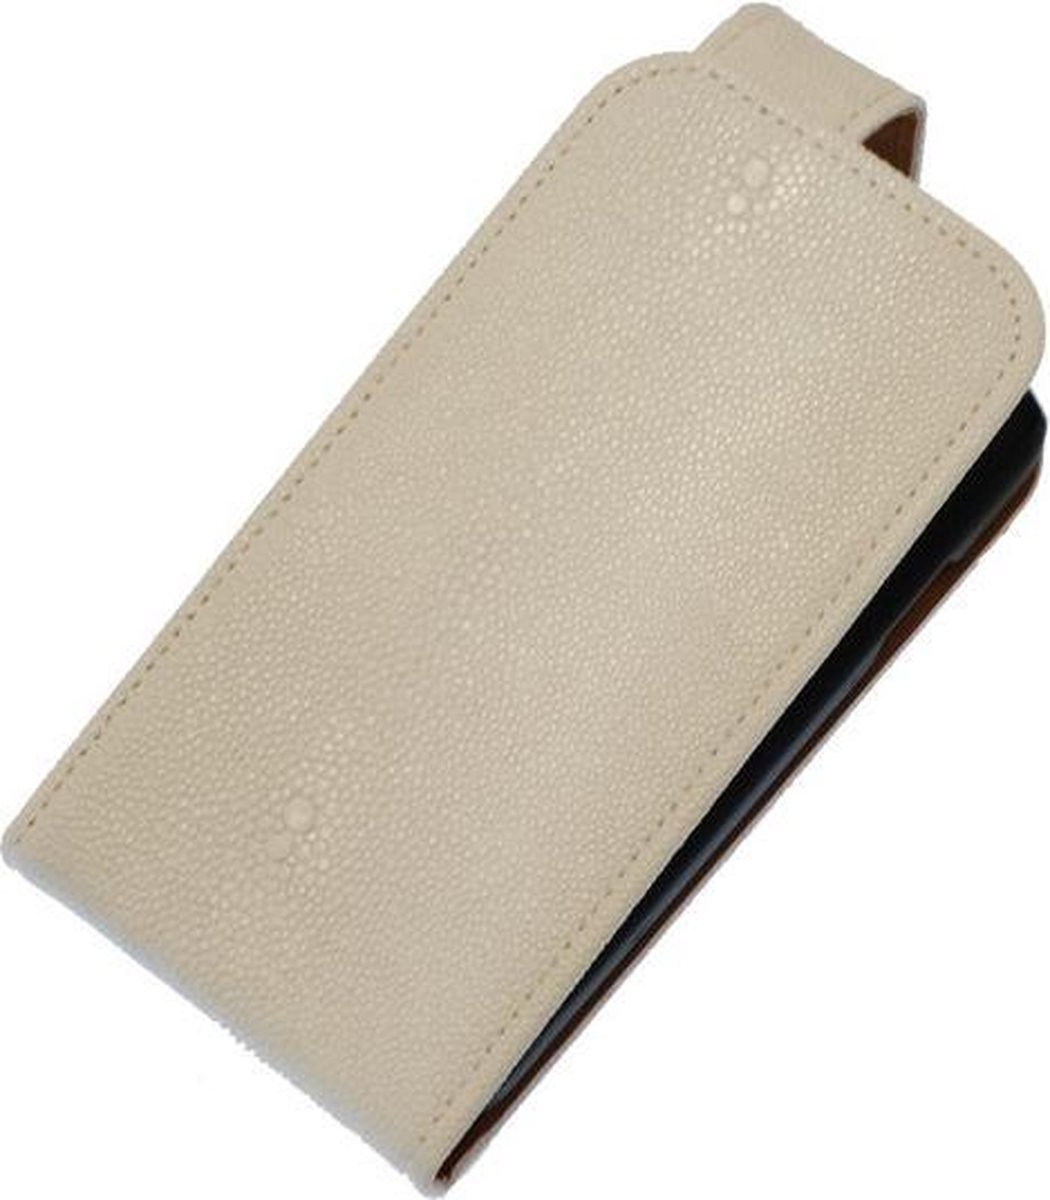 Wit Ribbel Classic flip case cover hoesje voor Apple iPhone 4 / 4s